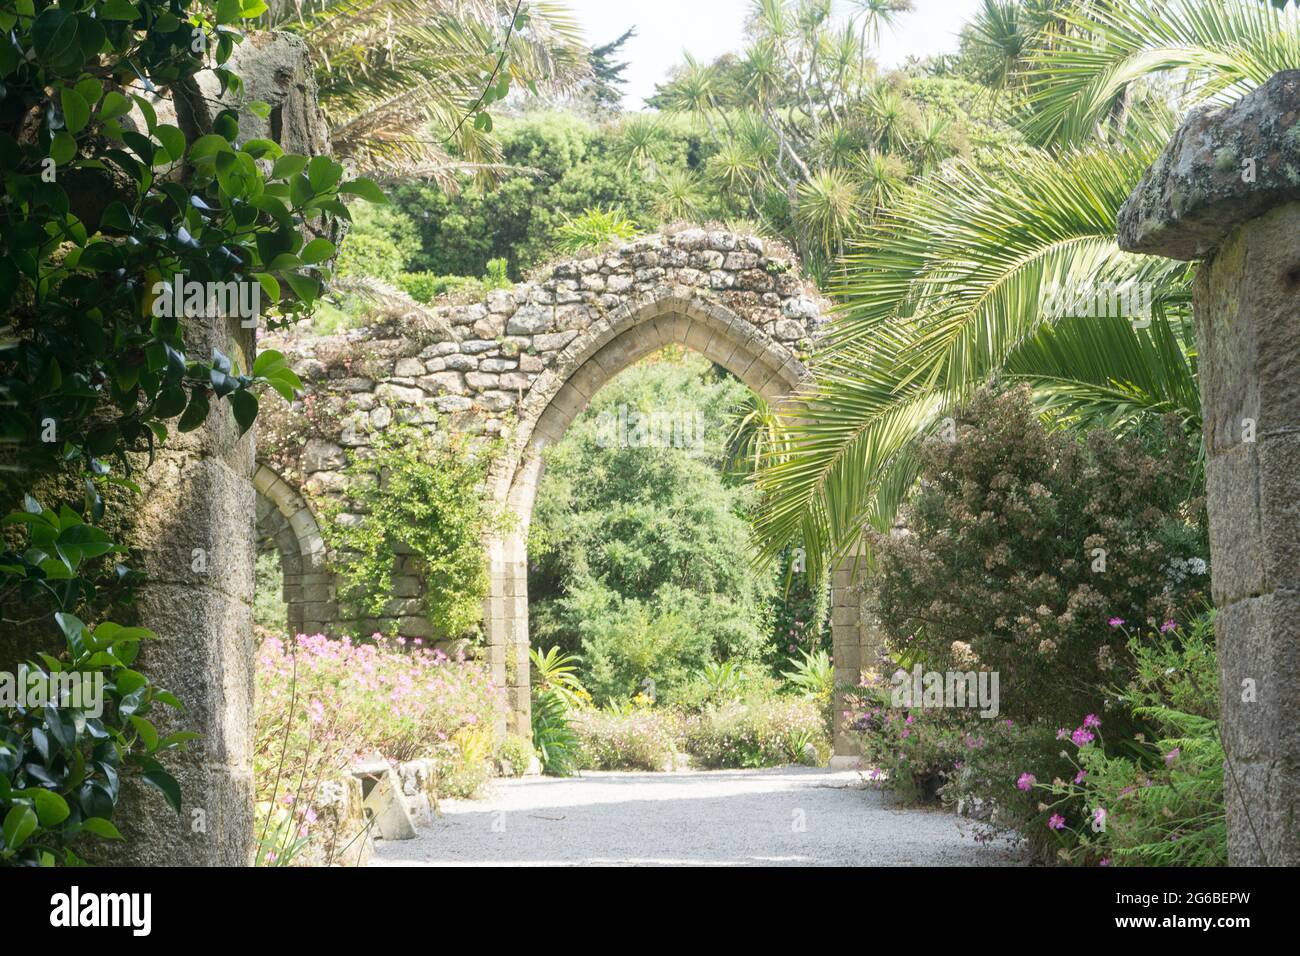 Arco delle rovine dell'abbazia benedettina in Abbey Gardens, Tresco, Isole di Scilly, Cornovaglia, Regno Unito Foto Stock